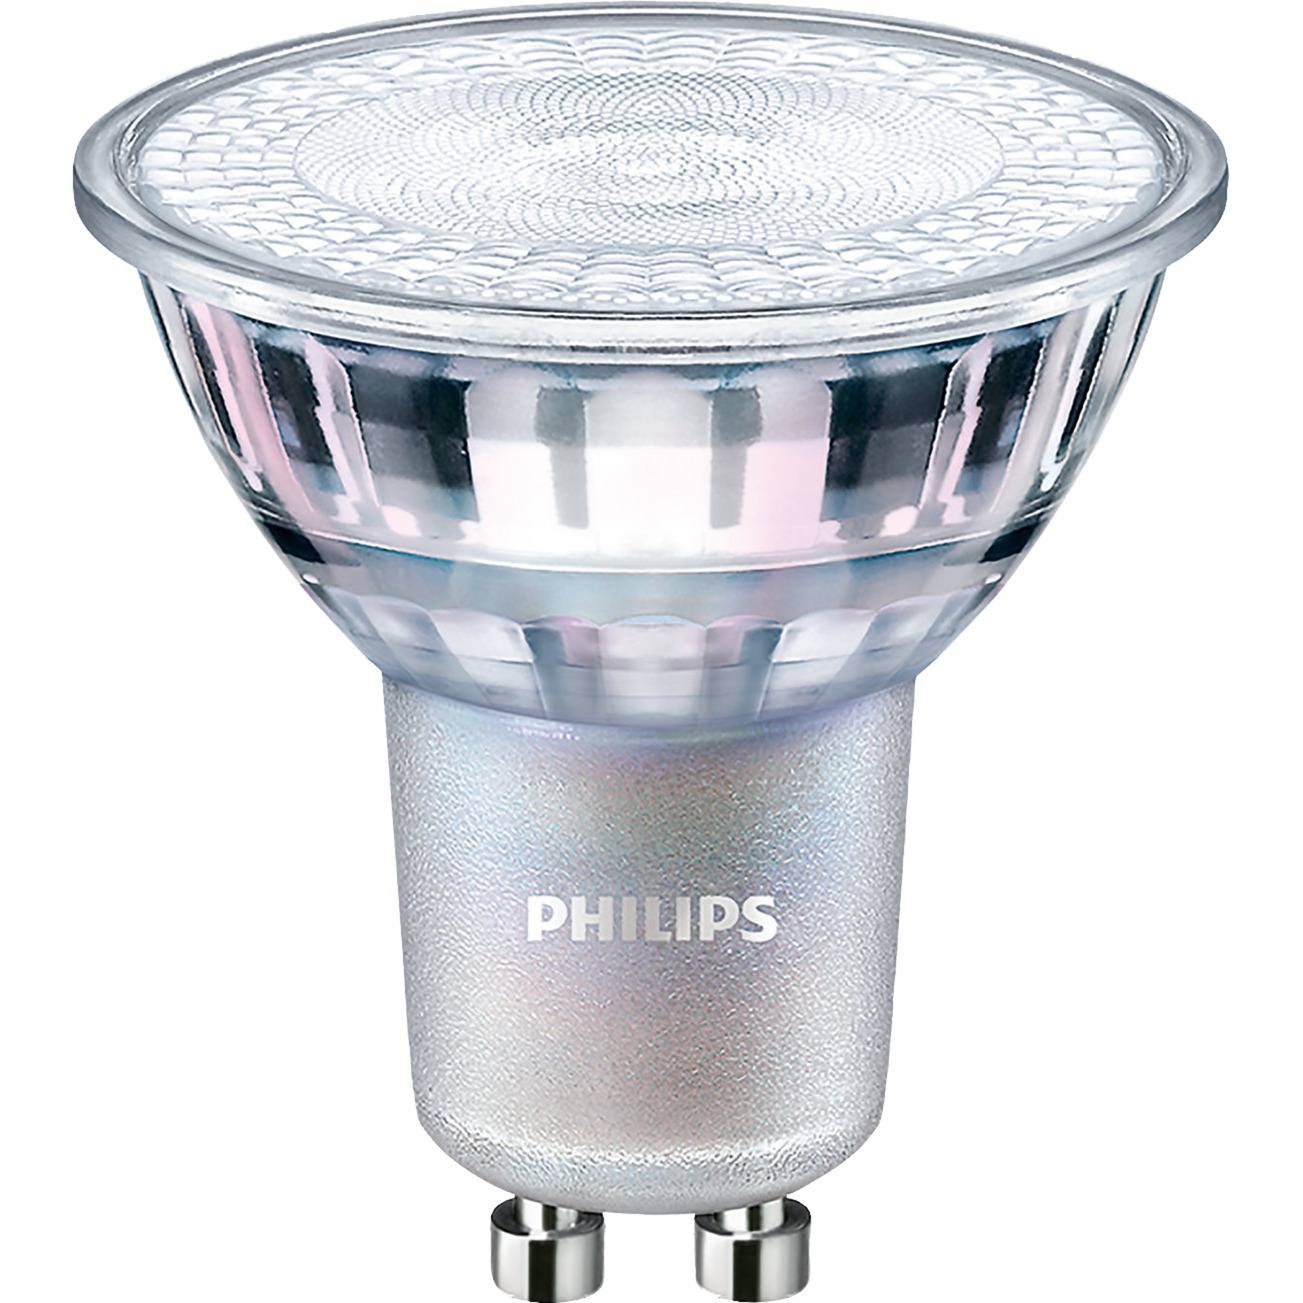 MASTER LEDspot Value D 4.9-50W GU10 940 60D, LED-Lampe von Philips